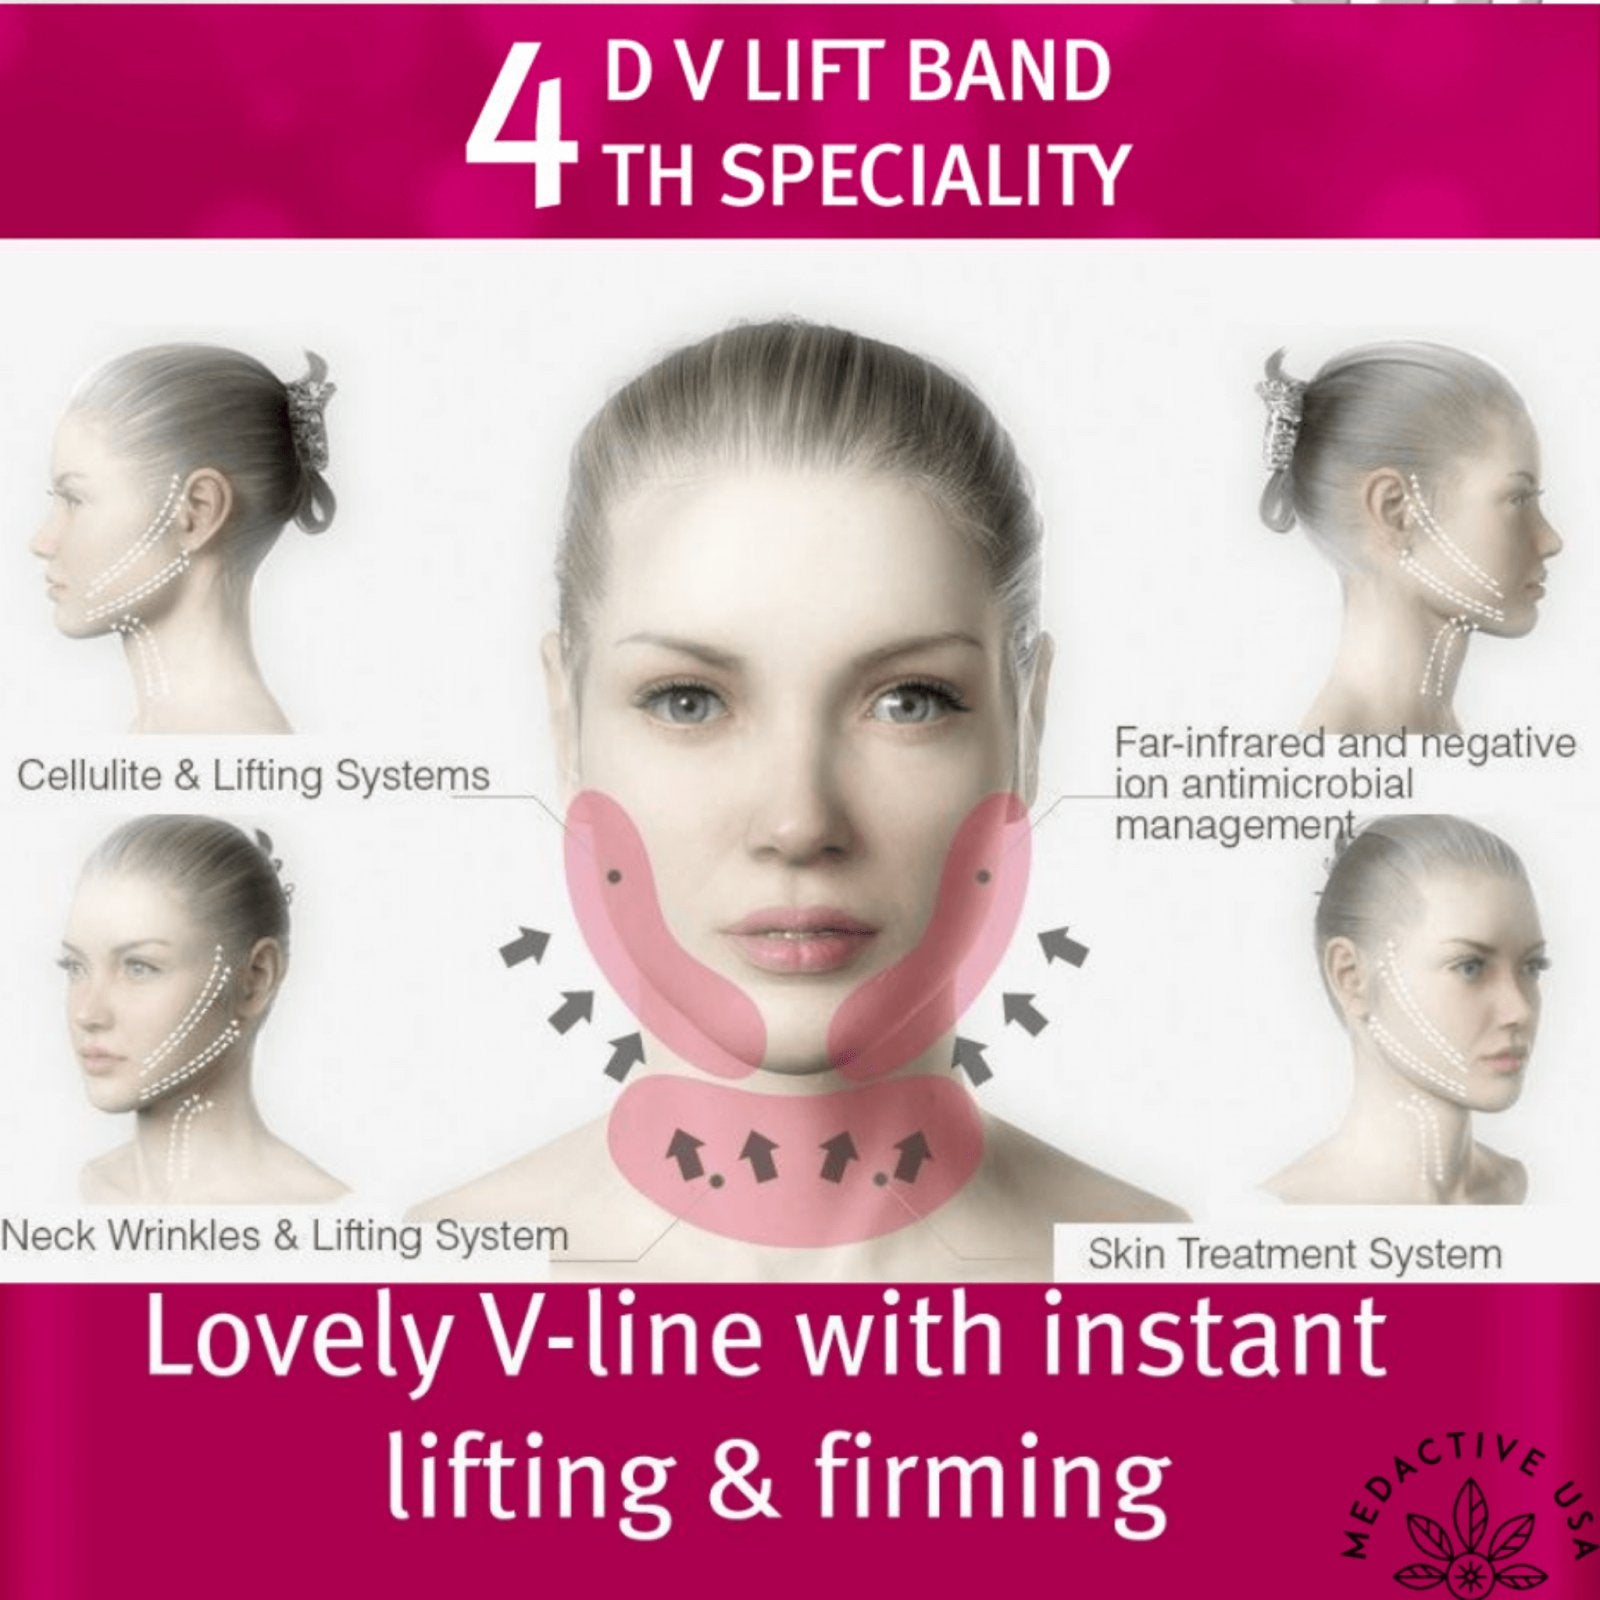 4D V-Lift Face Band - Vela Contour - Medactiveshop